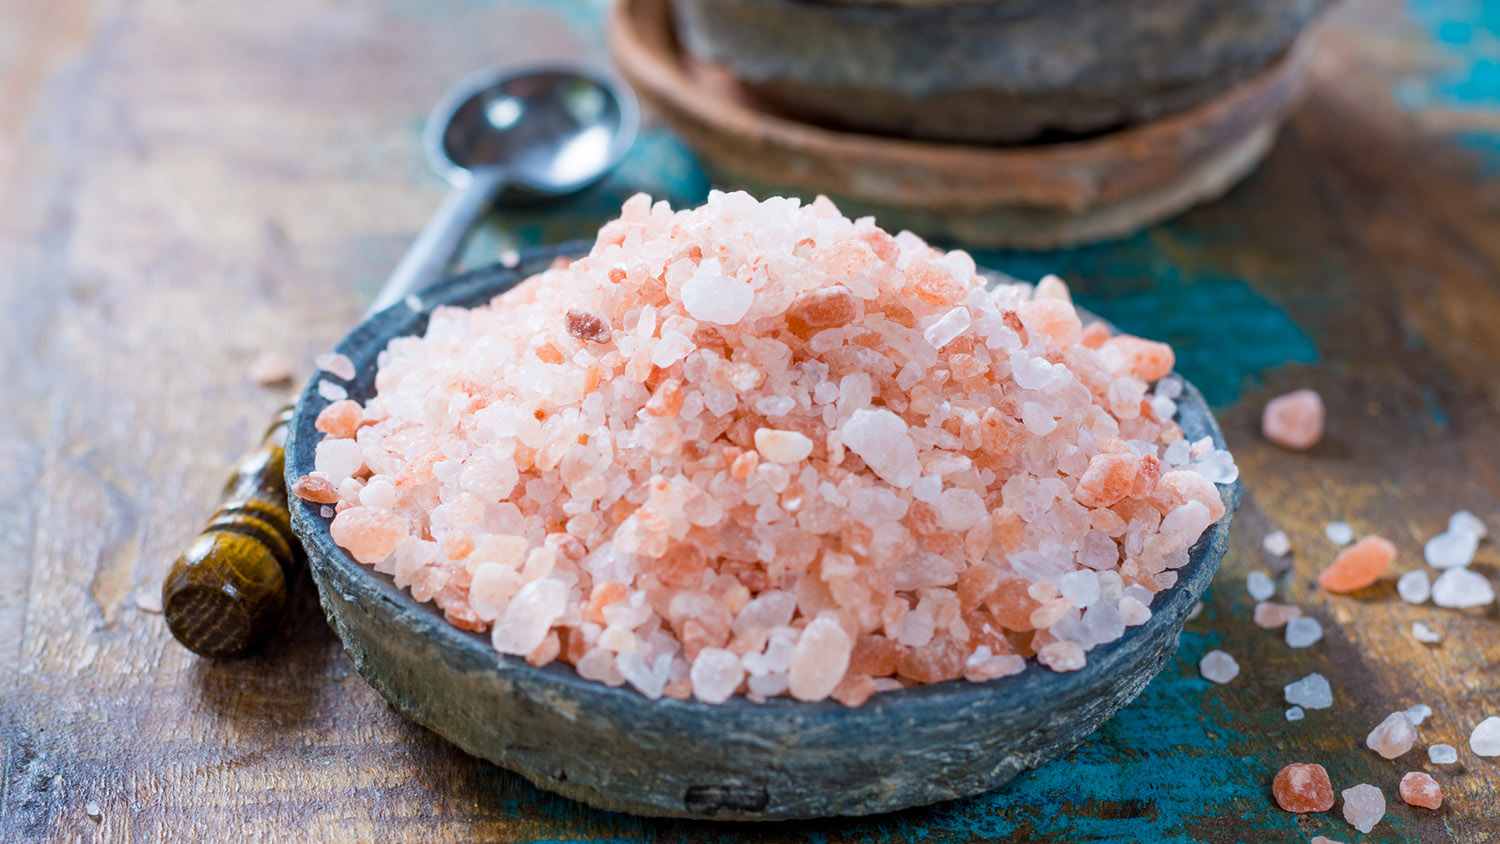 garam himalaya sixtyandme c - Garam Himalaya, Berbentuk Kristal Pink yang Dianggap Lebih Sehat